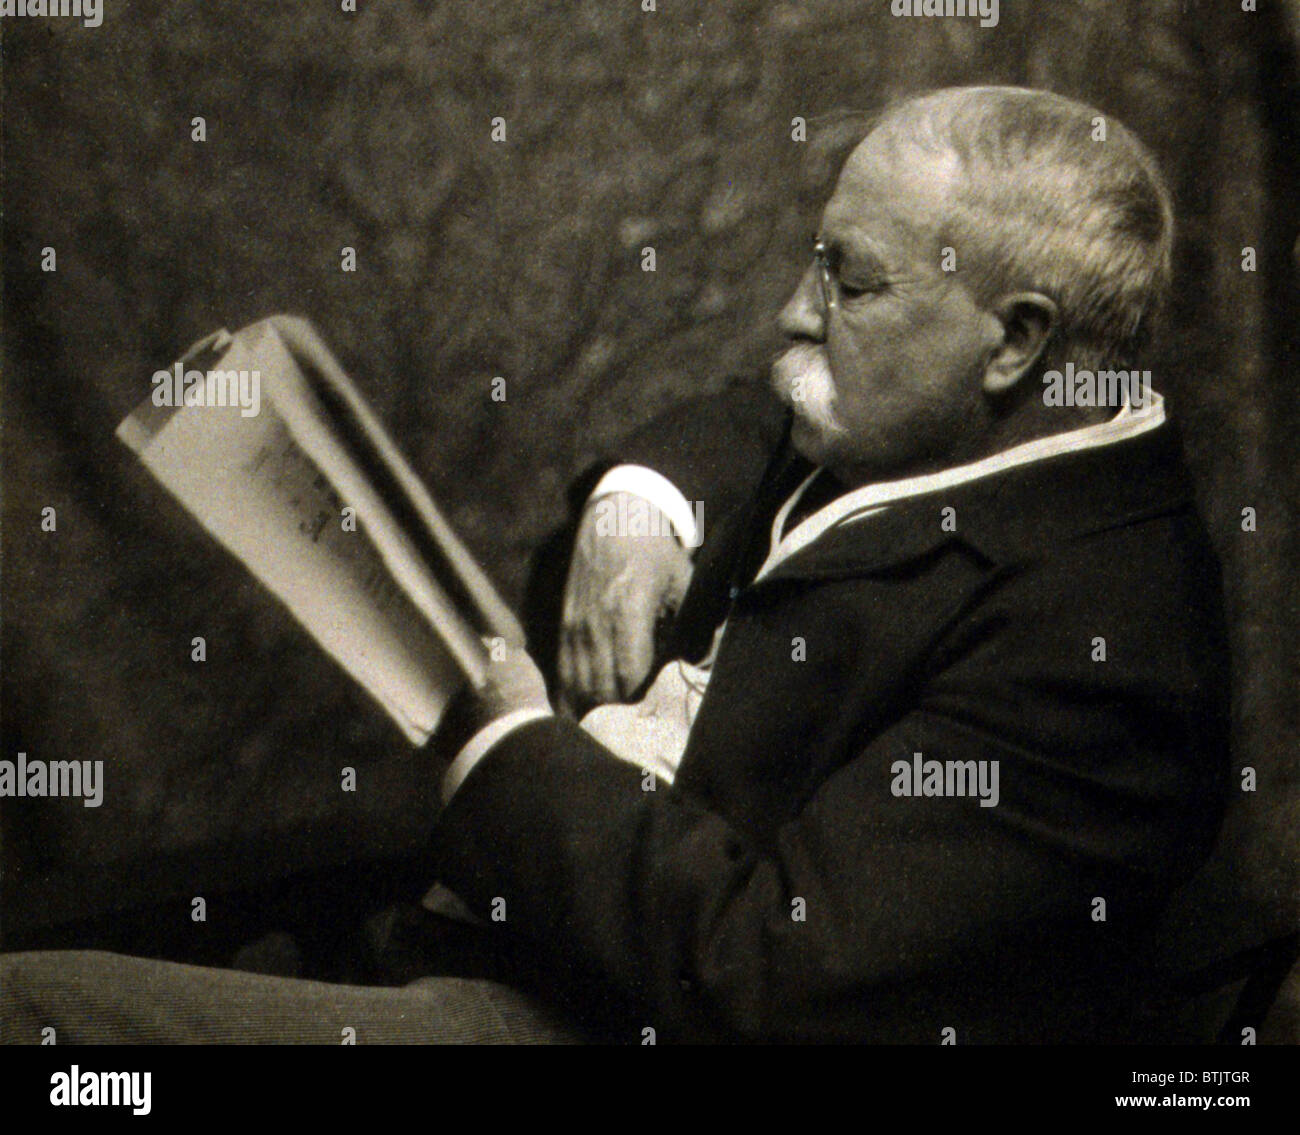 William Dean Howells (1837-1920), US-amerikanischer Schriftsteller, der Realist und Naturwissenschaftler Schriftsteller verfocht. Foto von Zaida Ben Yusuf, ca. 1900. Stockfoto